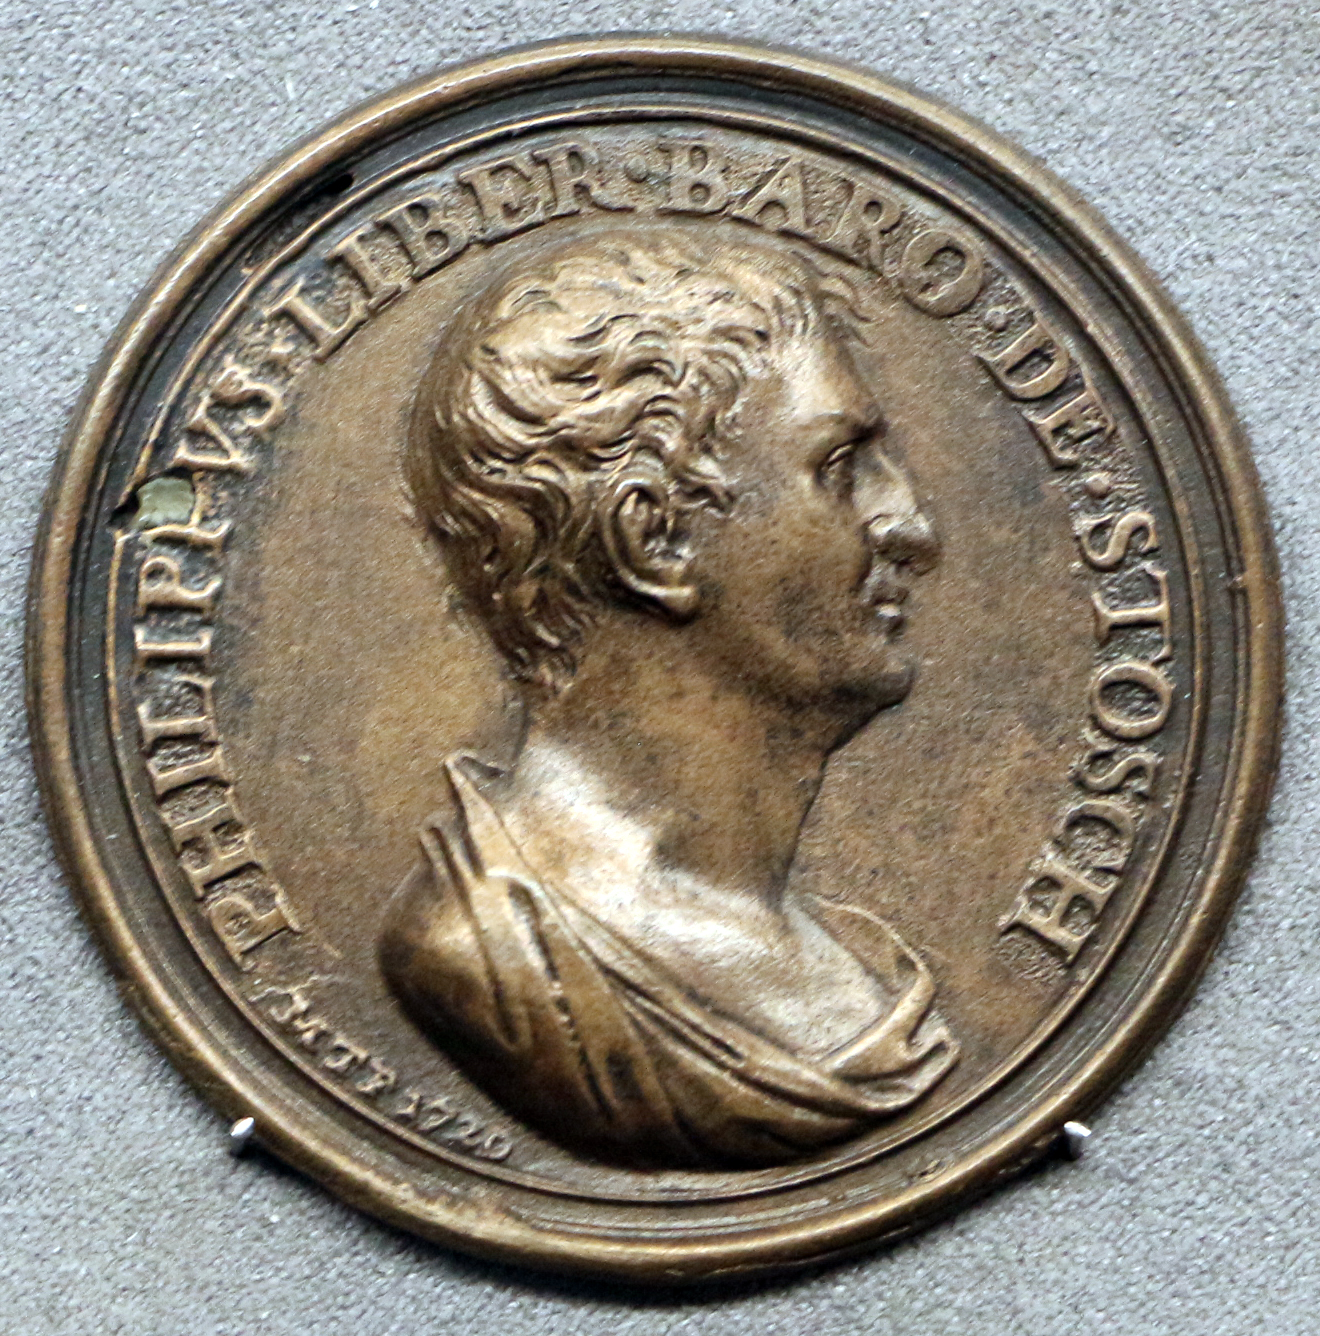 File:Stosch, Philpp von medal by Marcus Tuscher 1738 (Bargello).jpg